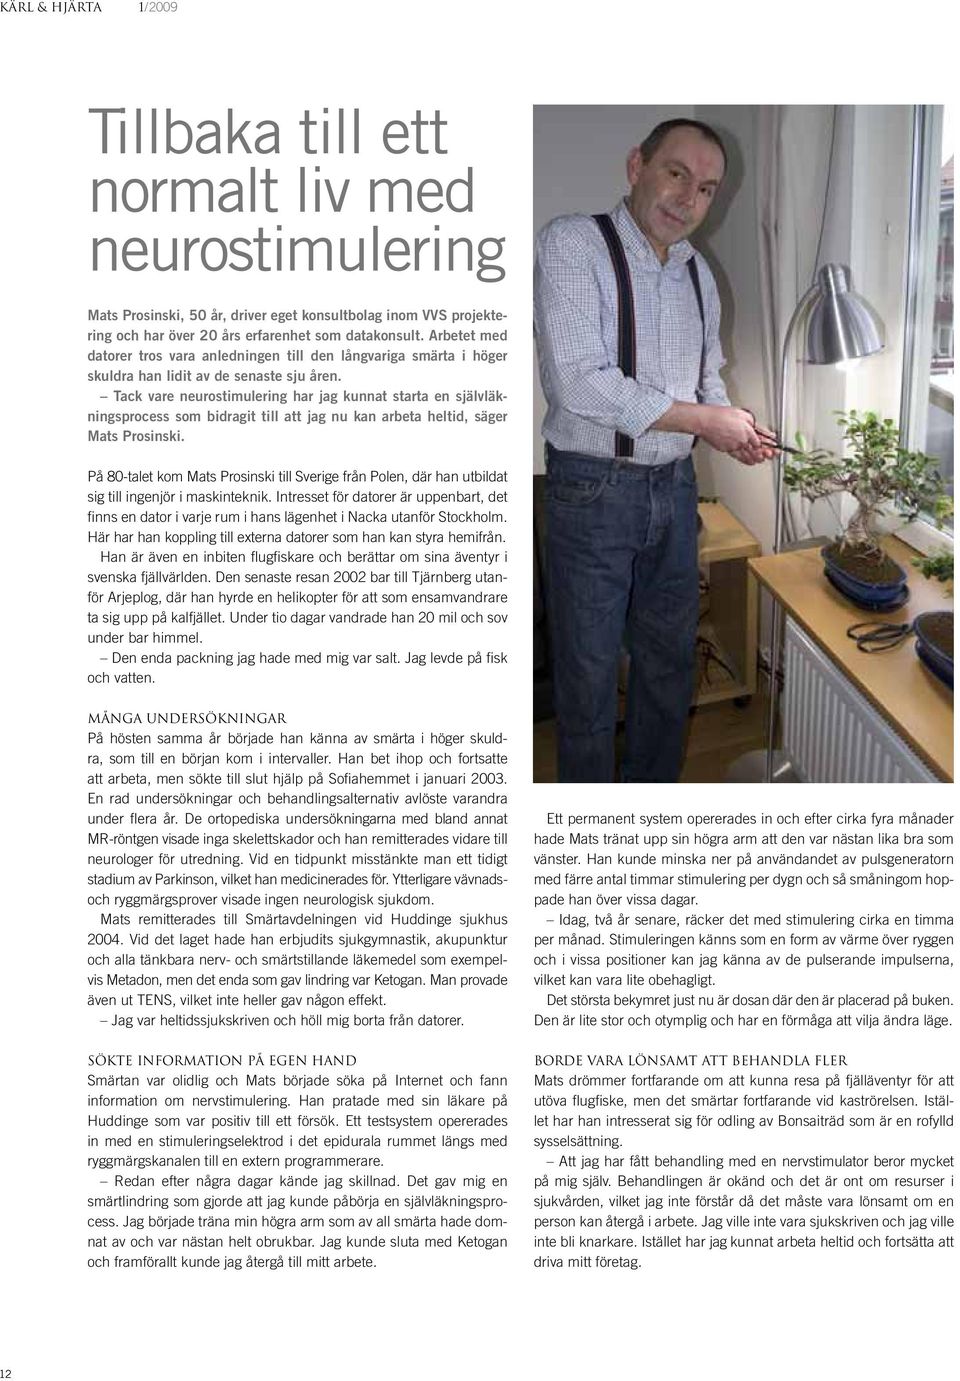 Tack vare neurostimulering har jag kunnat starta en självläkningsprocess som bidragit till att jag nu kan arbeta heltid, säger Mats Prosinski.